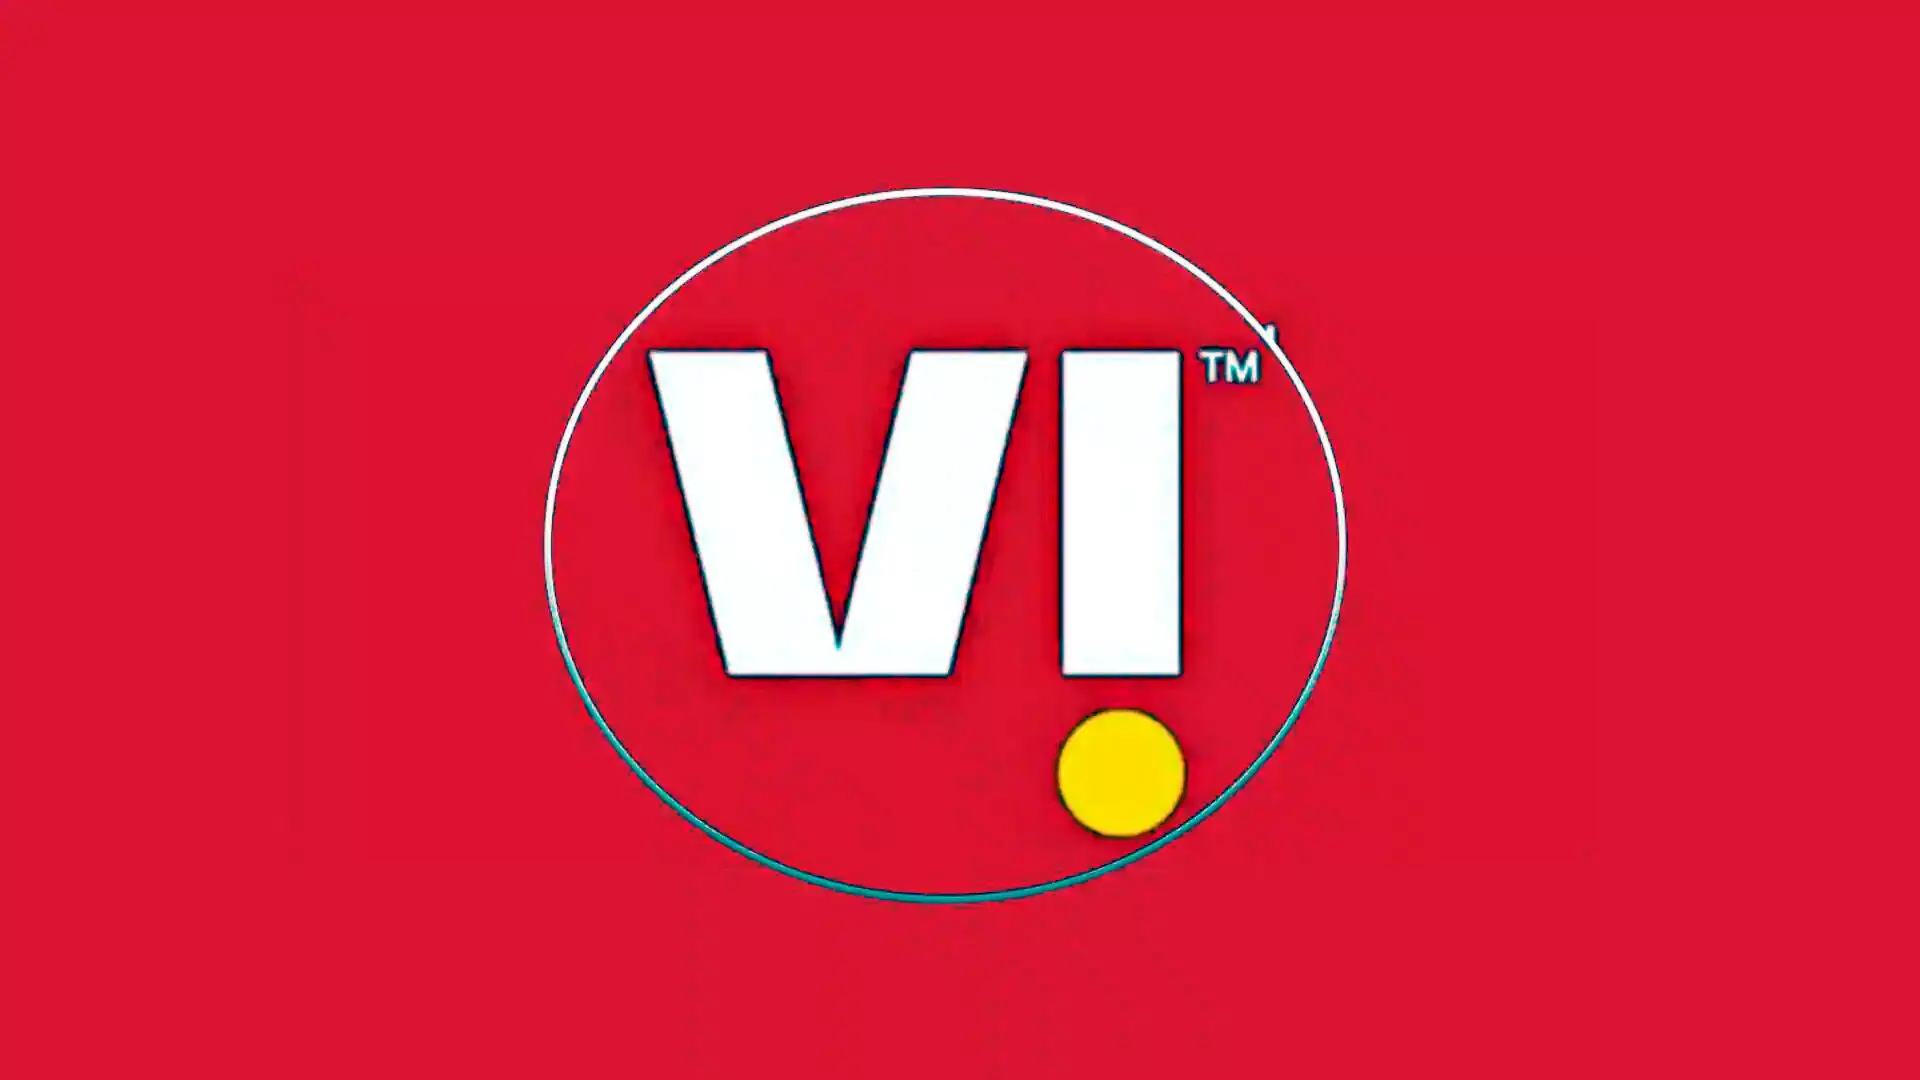 Vi ने नई दिल्ली में इलेक्ट्रॉनिक सिम (eSIM) सेवा शुरू की